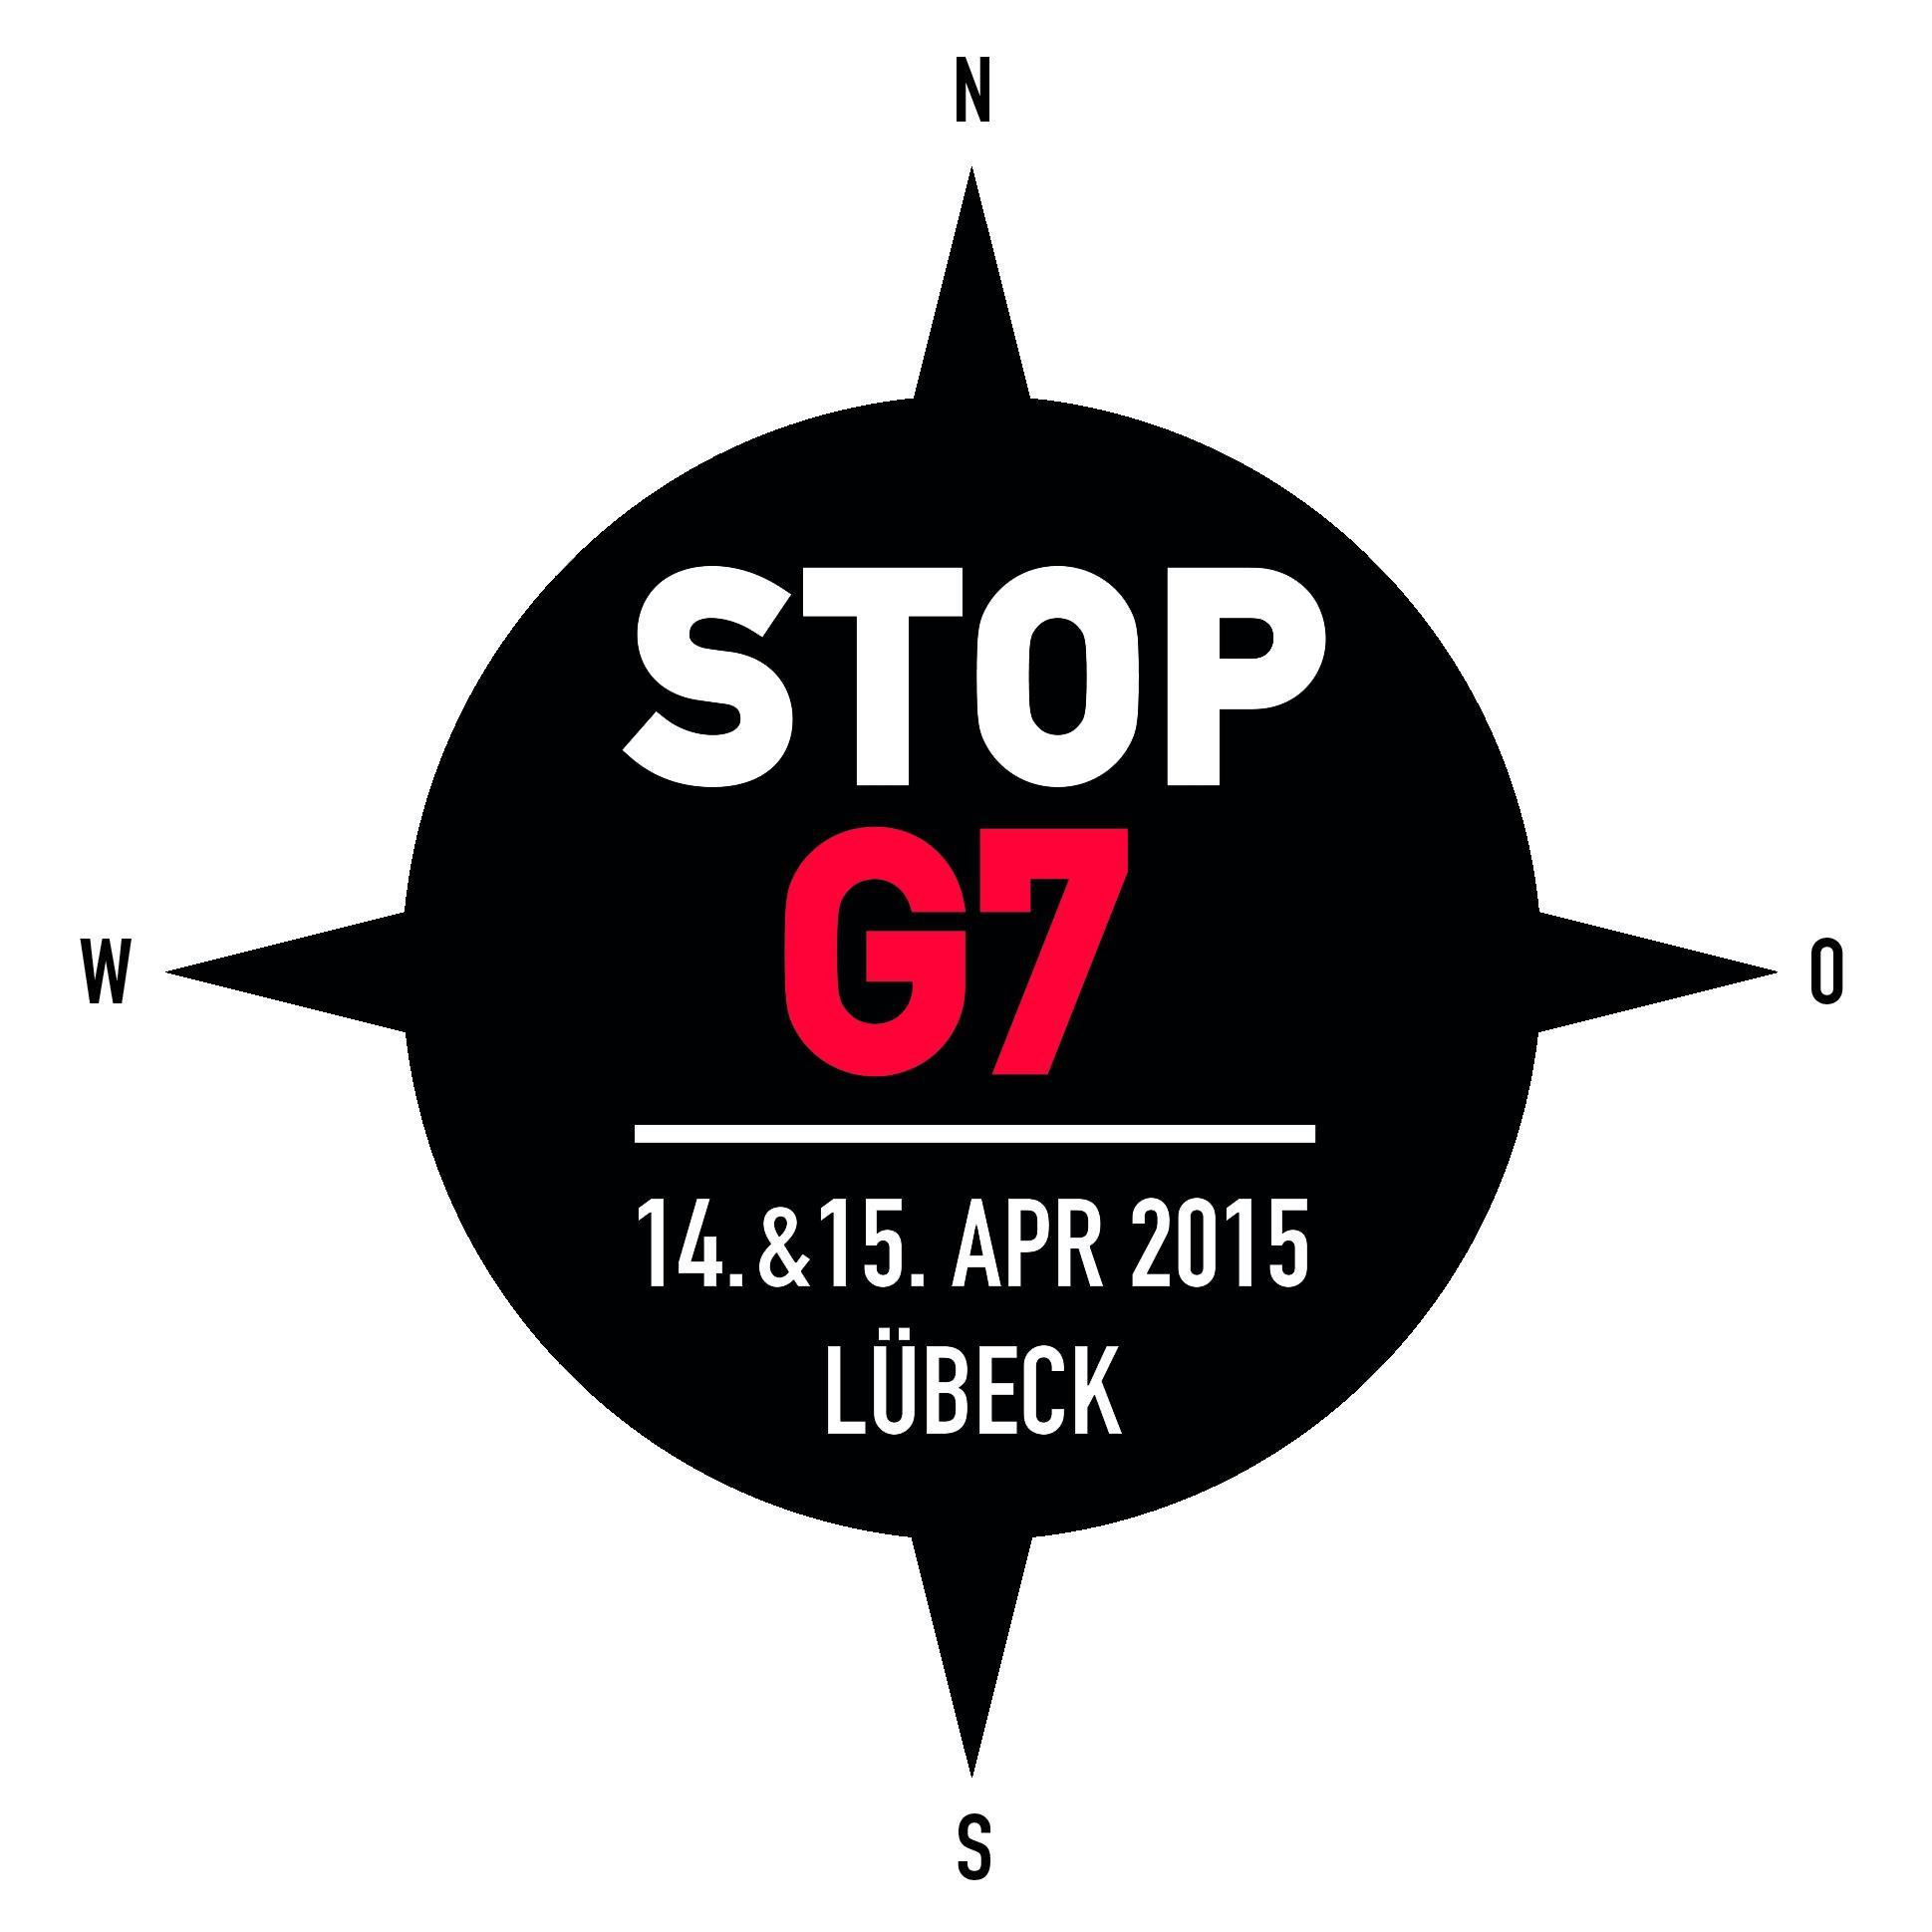 Bündnis Stop G7 Lübeck. Nächste Aktionswoche vom 3. bis 8. Juni 2015 in München, Garmisch-Partenkirchen und Elmau. Tweets dazu unter @stopg7elmau